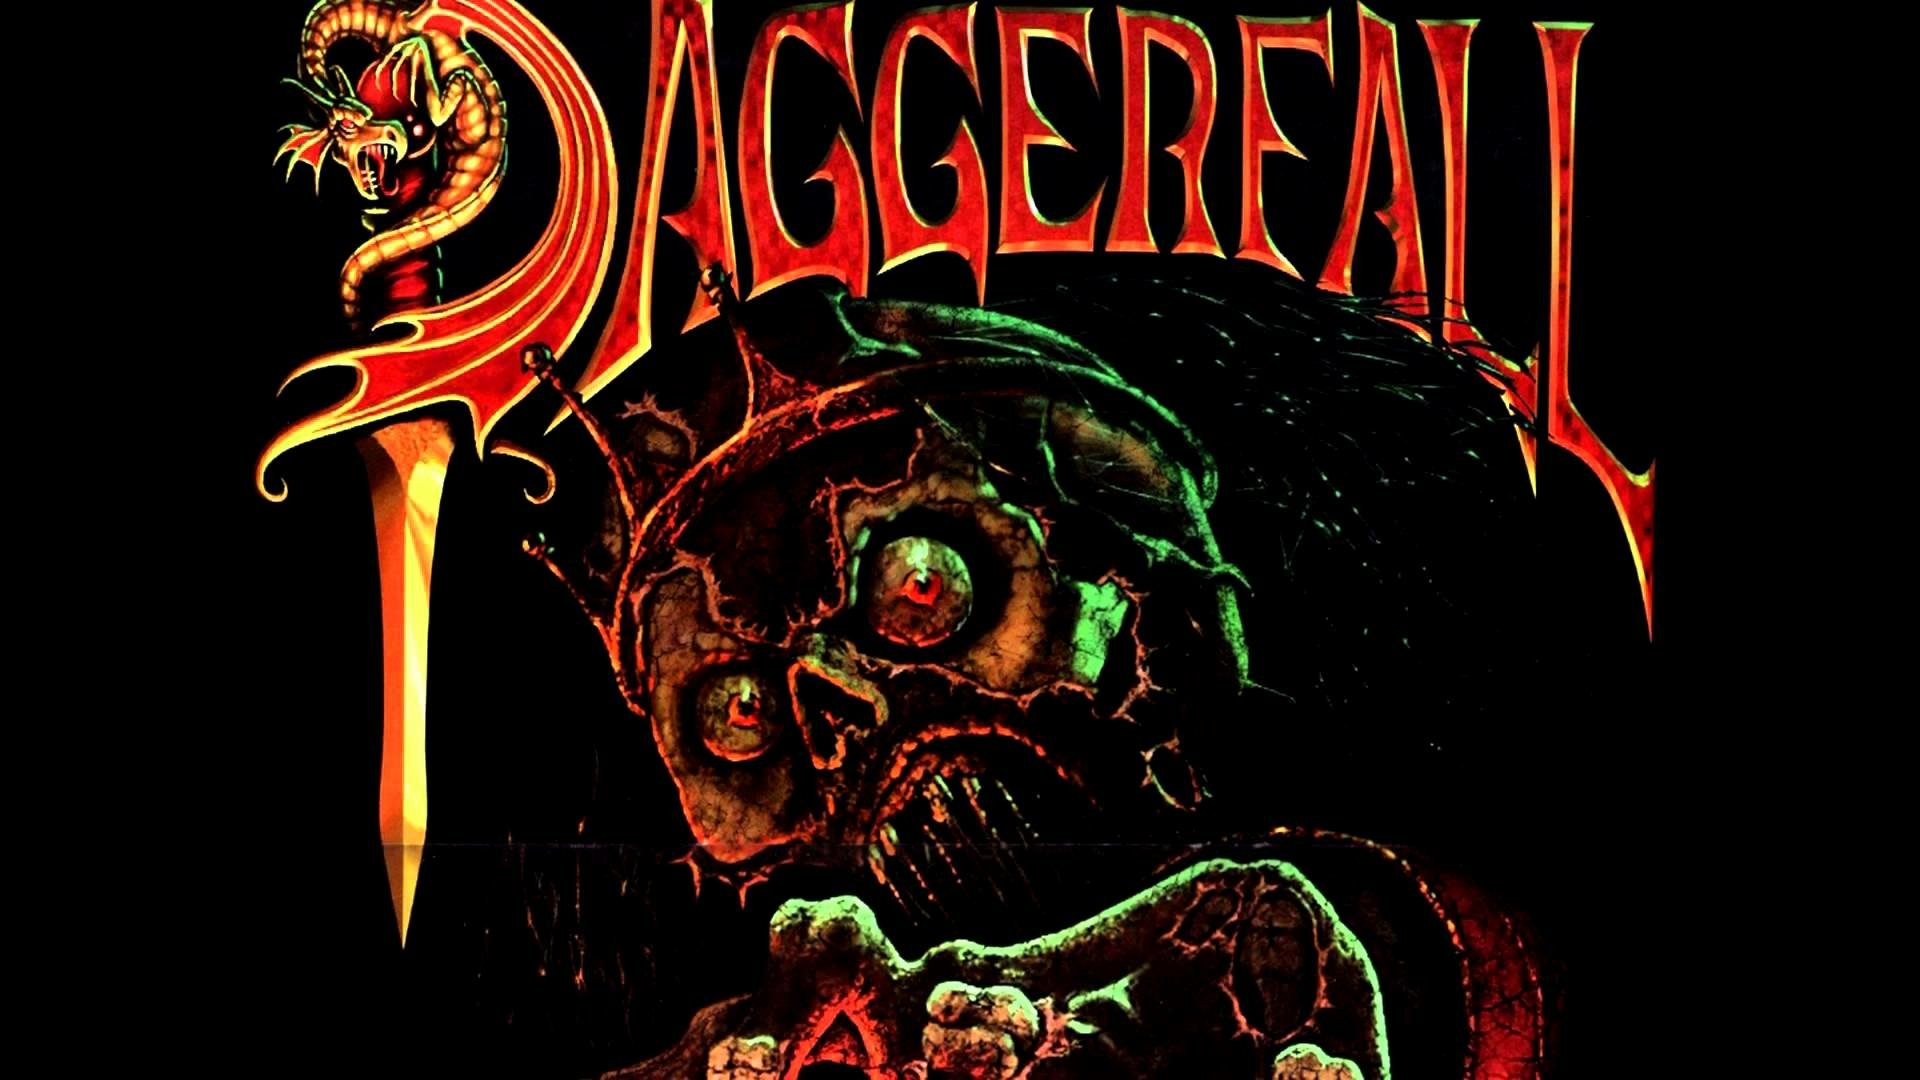 daggerfall free download